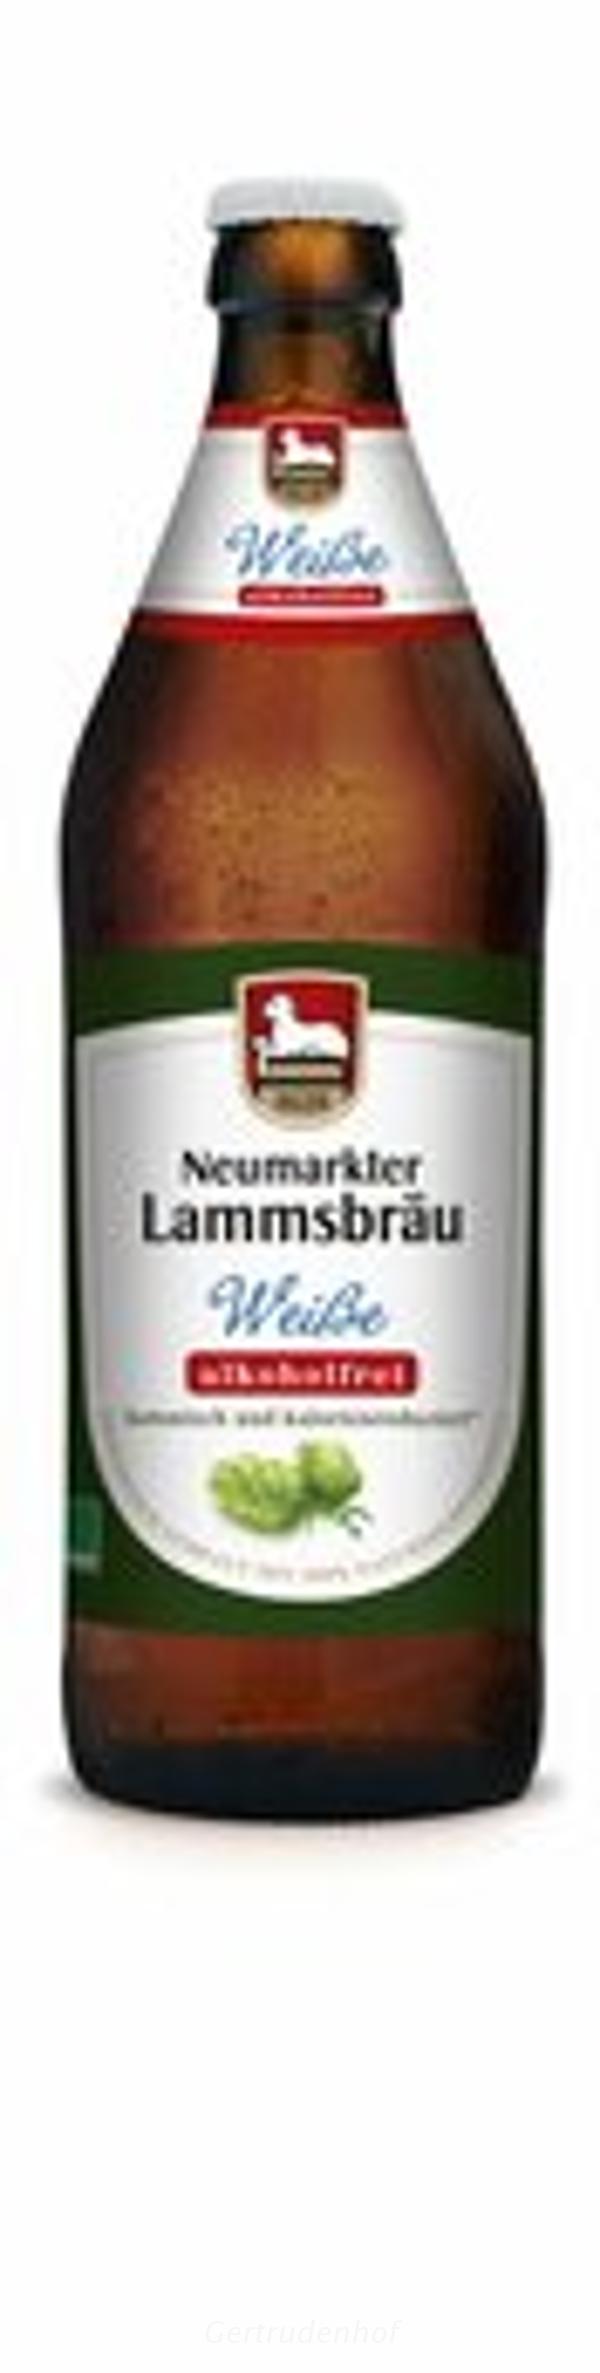 Produktfoto zu Lammsbräu Weiße alkoholfrei